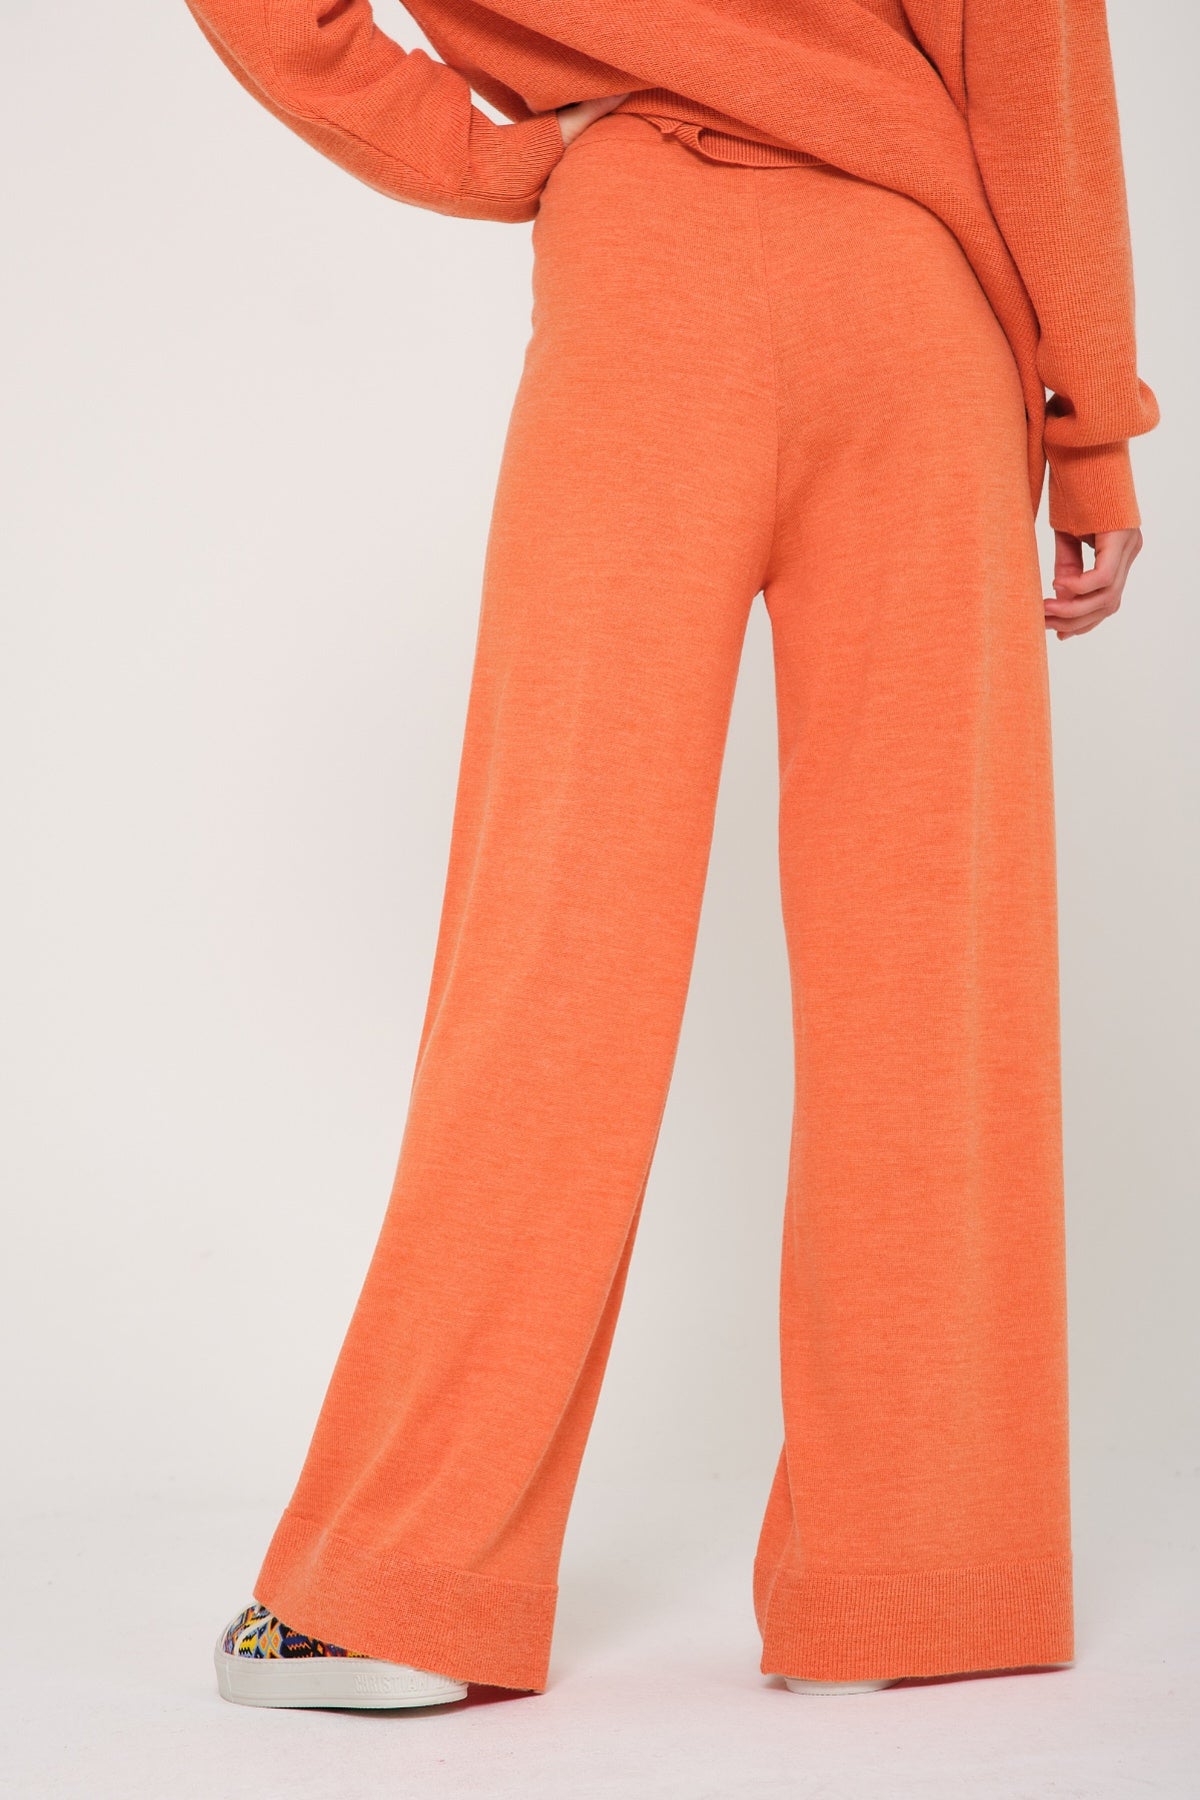 Peach Color Knit Sweater & Pants Set